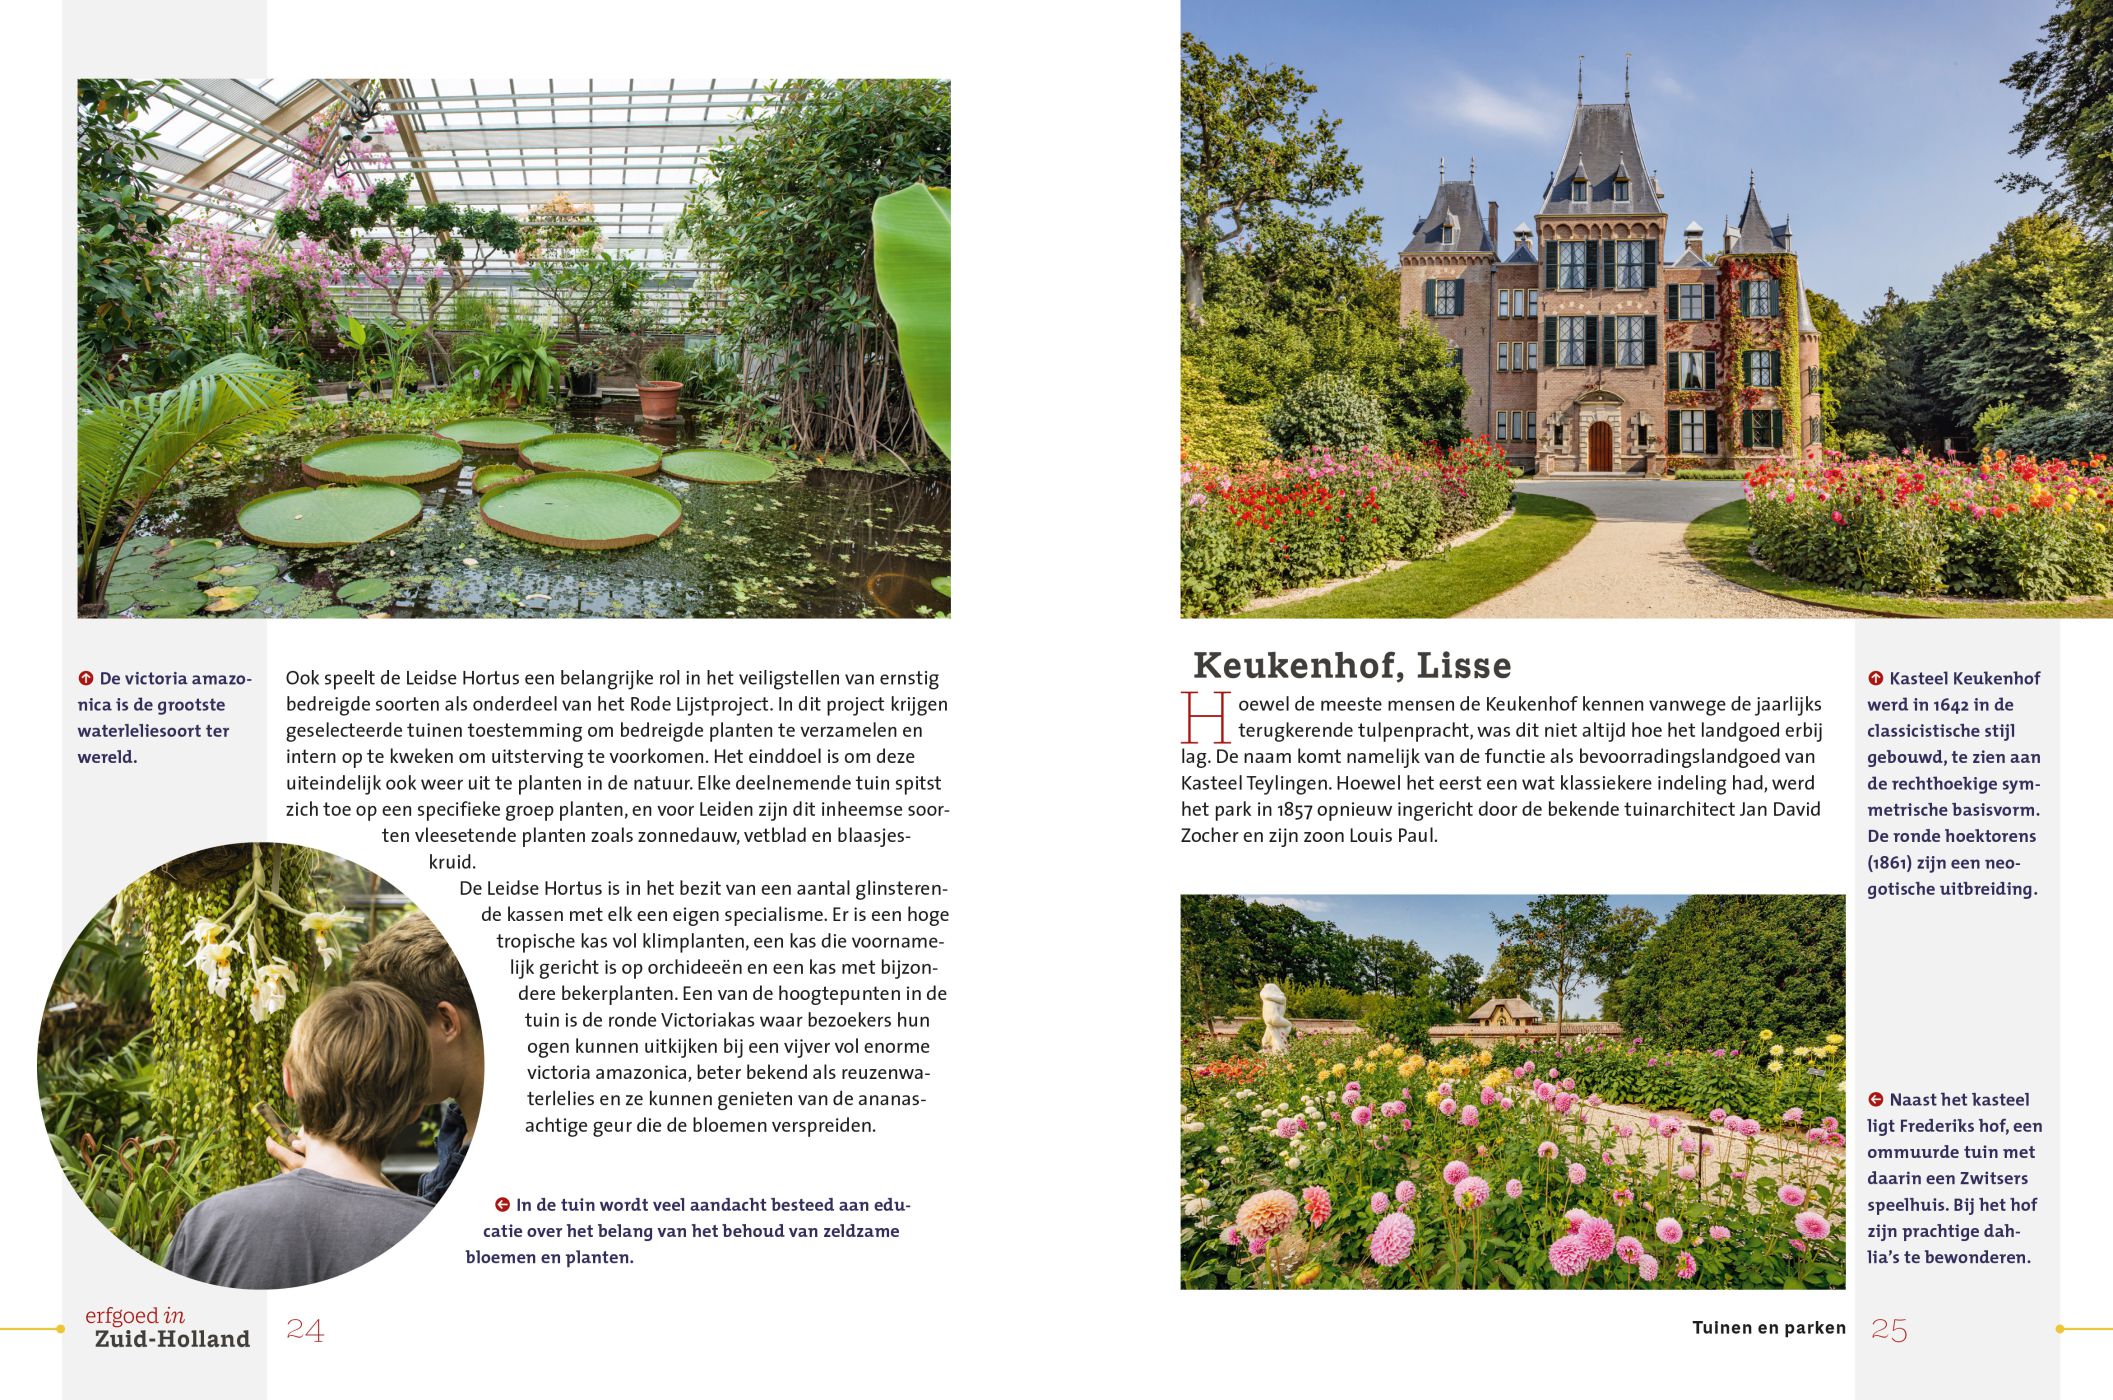 Inkijkexemplaar van het boek: <em>Erfgoed in Zuid-Holland. Tuinen en parken</em> - © Uitgeverij Matrijs